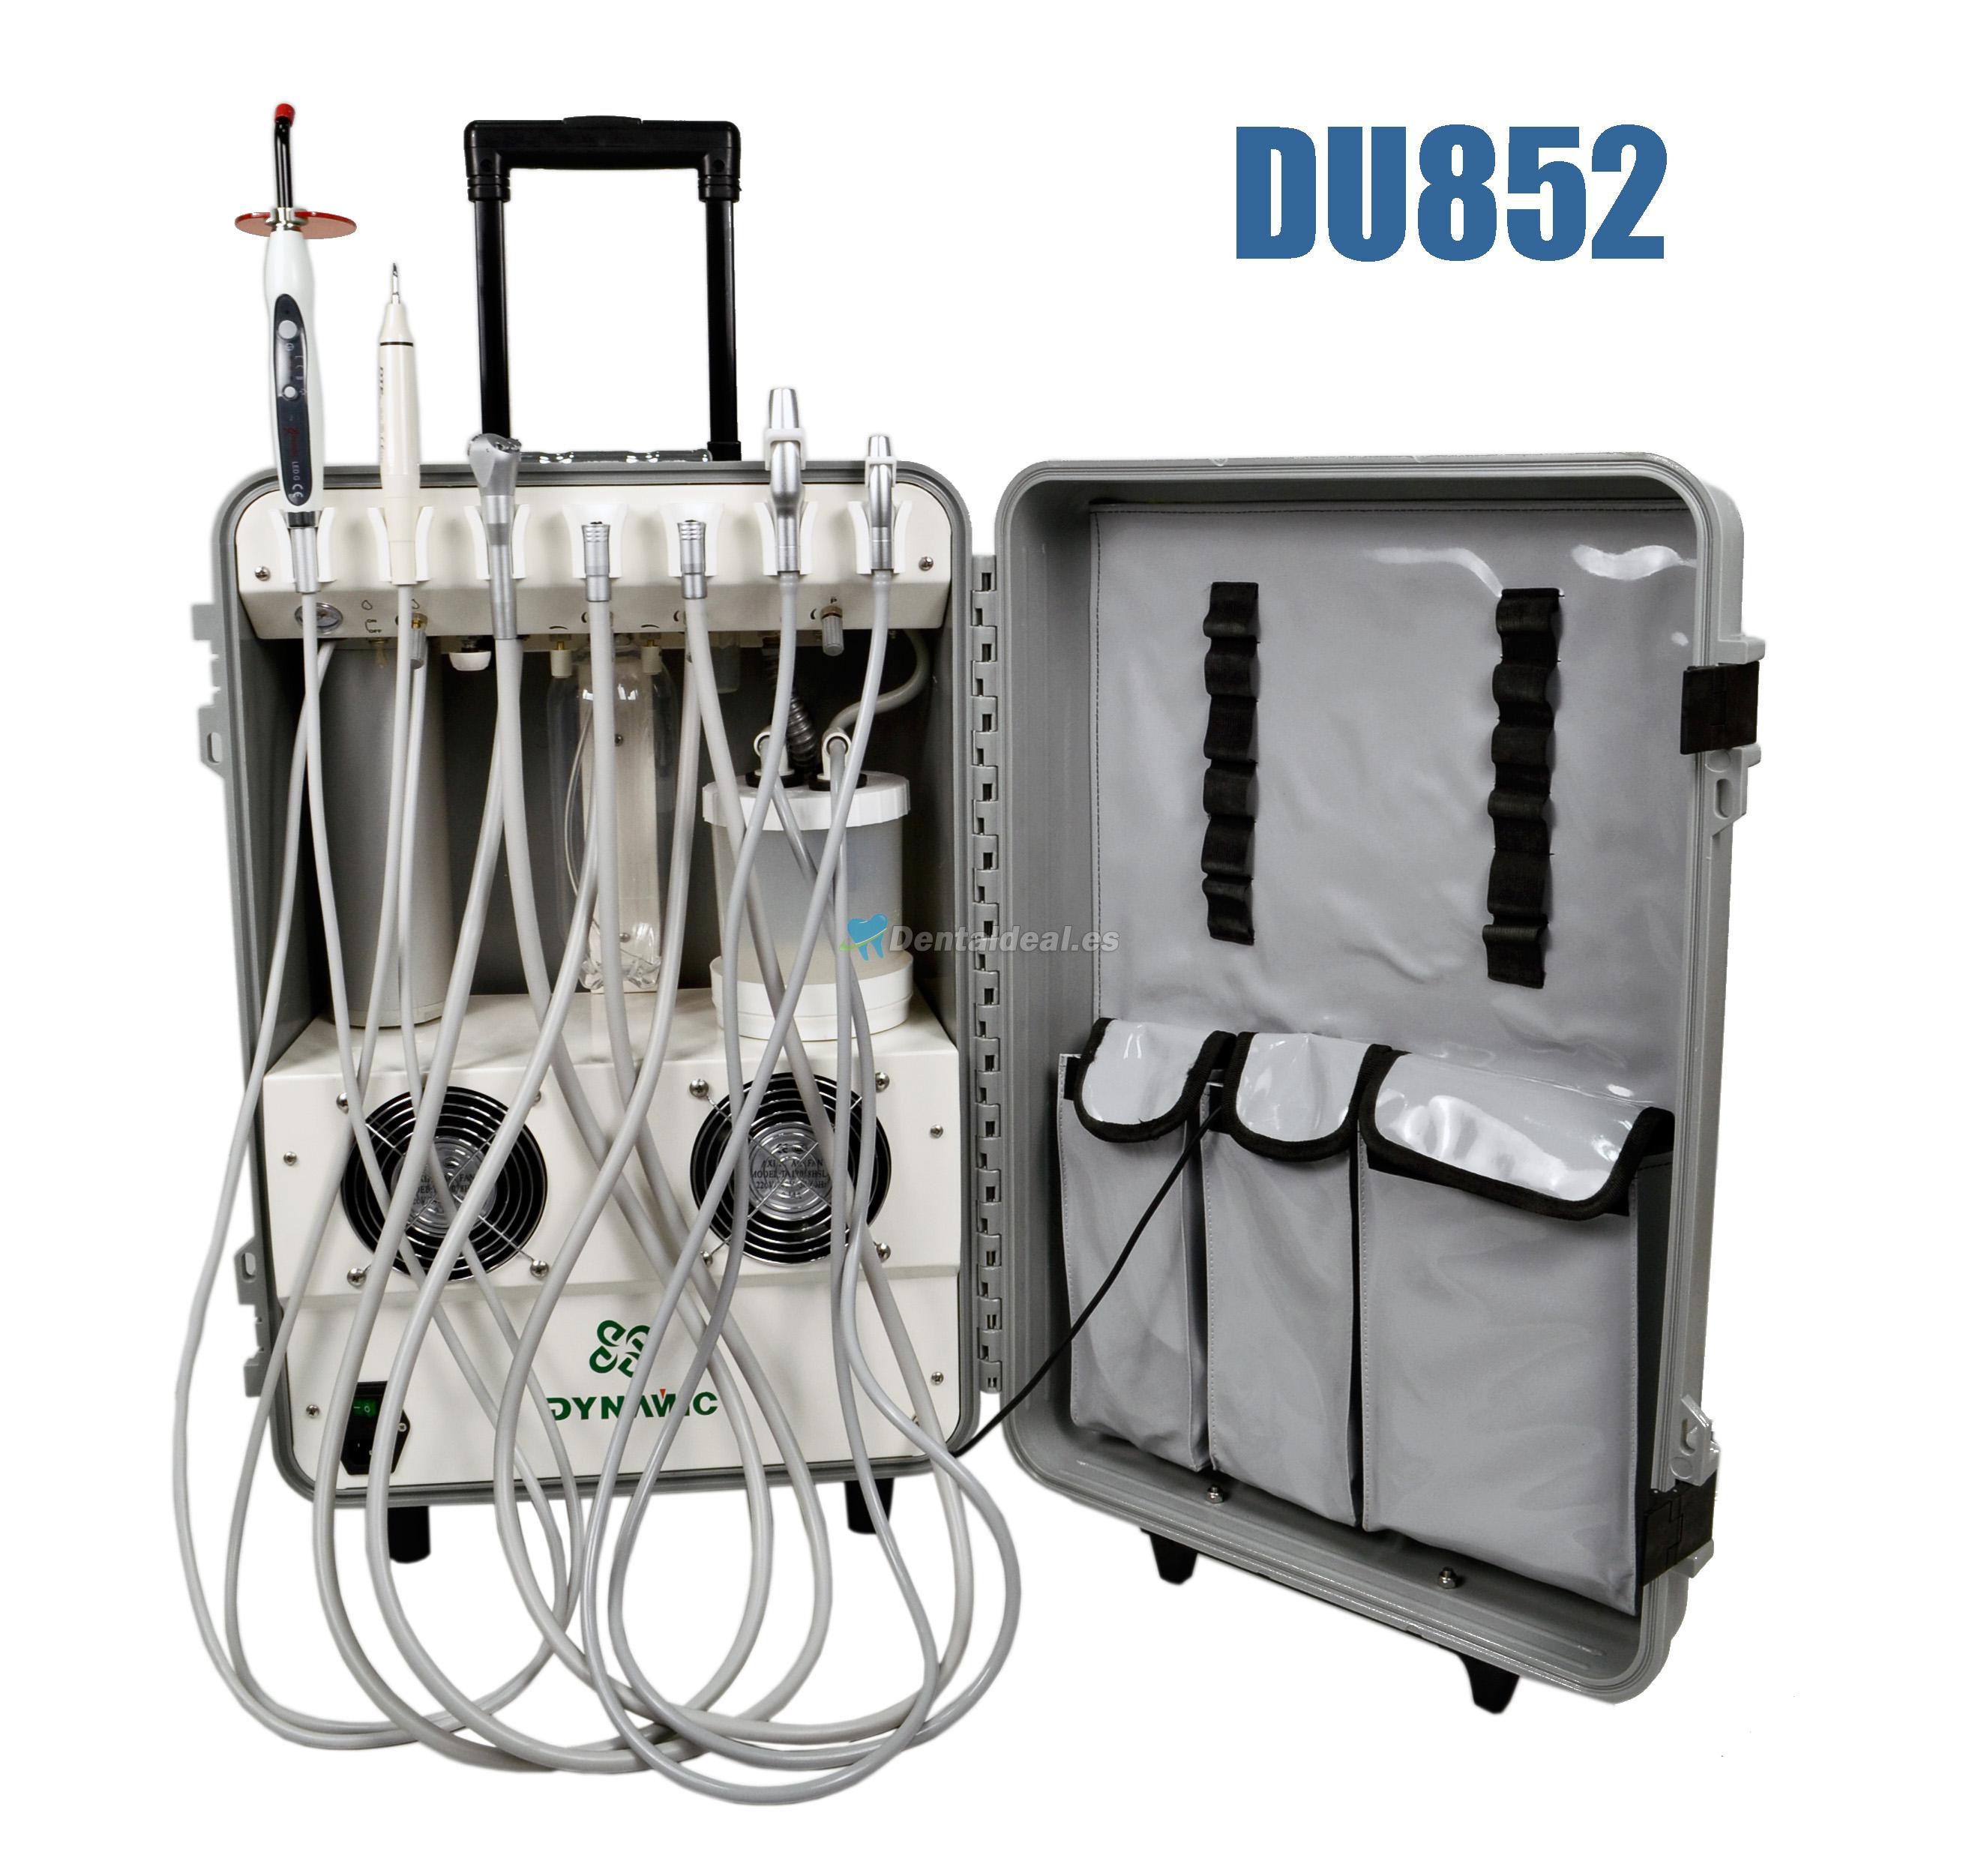 Dynamic® DU852 Unidad Dental Portátil con Compresor de Aire + Escalador Ultrasónico + Lampara Fotocurado